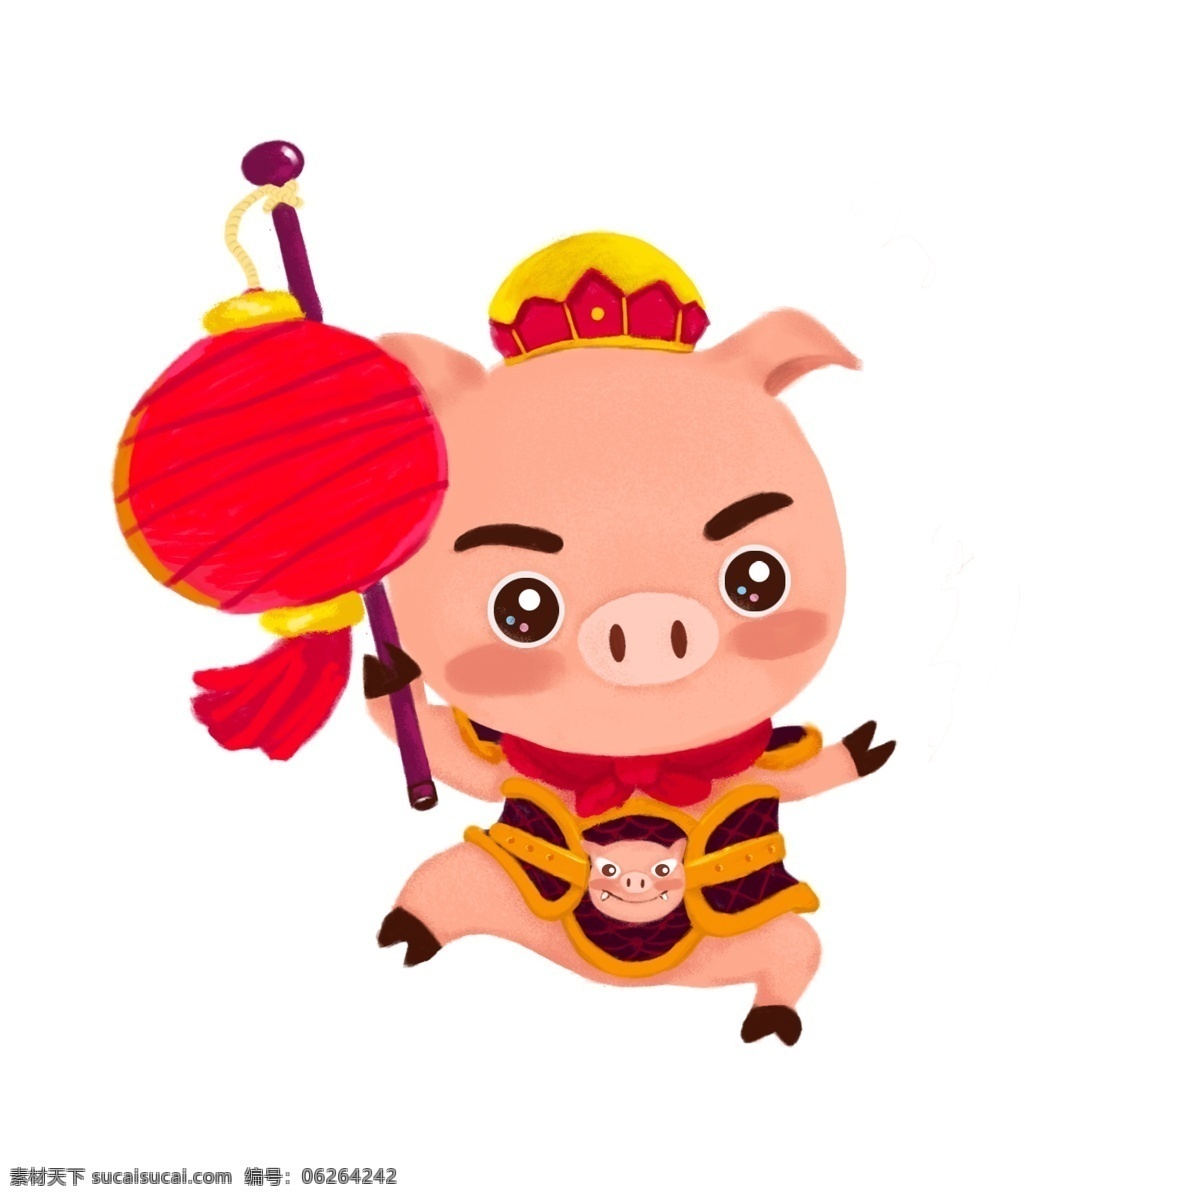 2019 春节 小 猪 原创 商用 元素 手绘 吉祥物 周年 生肖 可爱猪 灯笼 贺岁